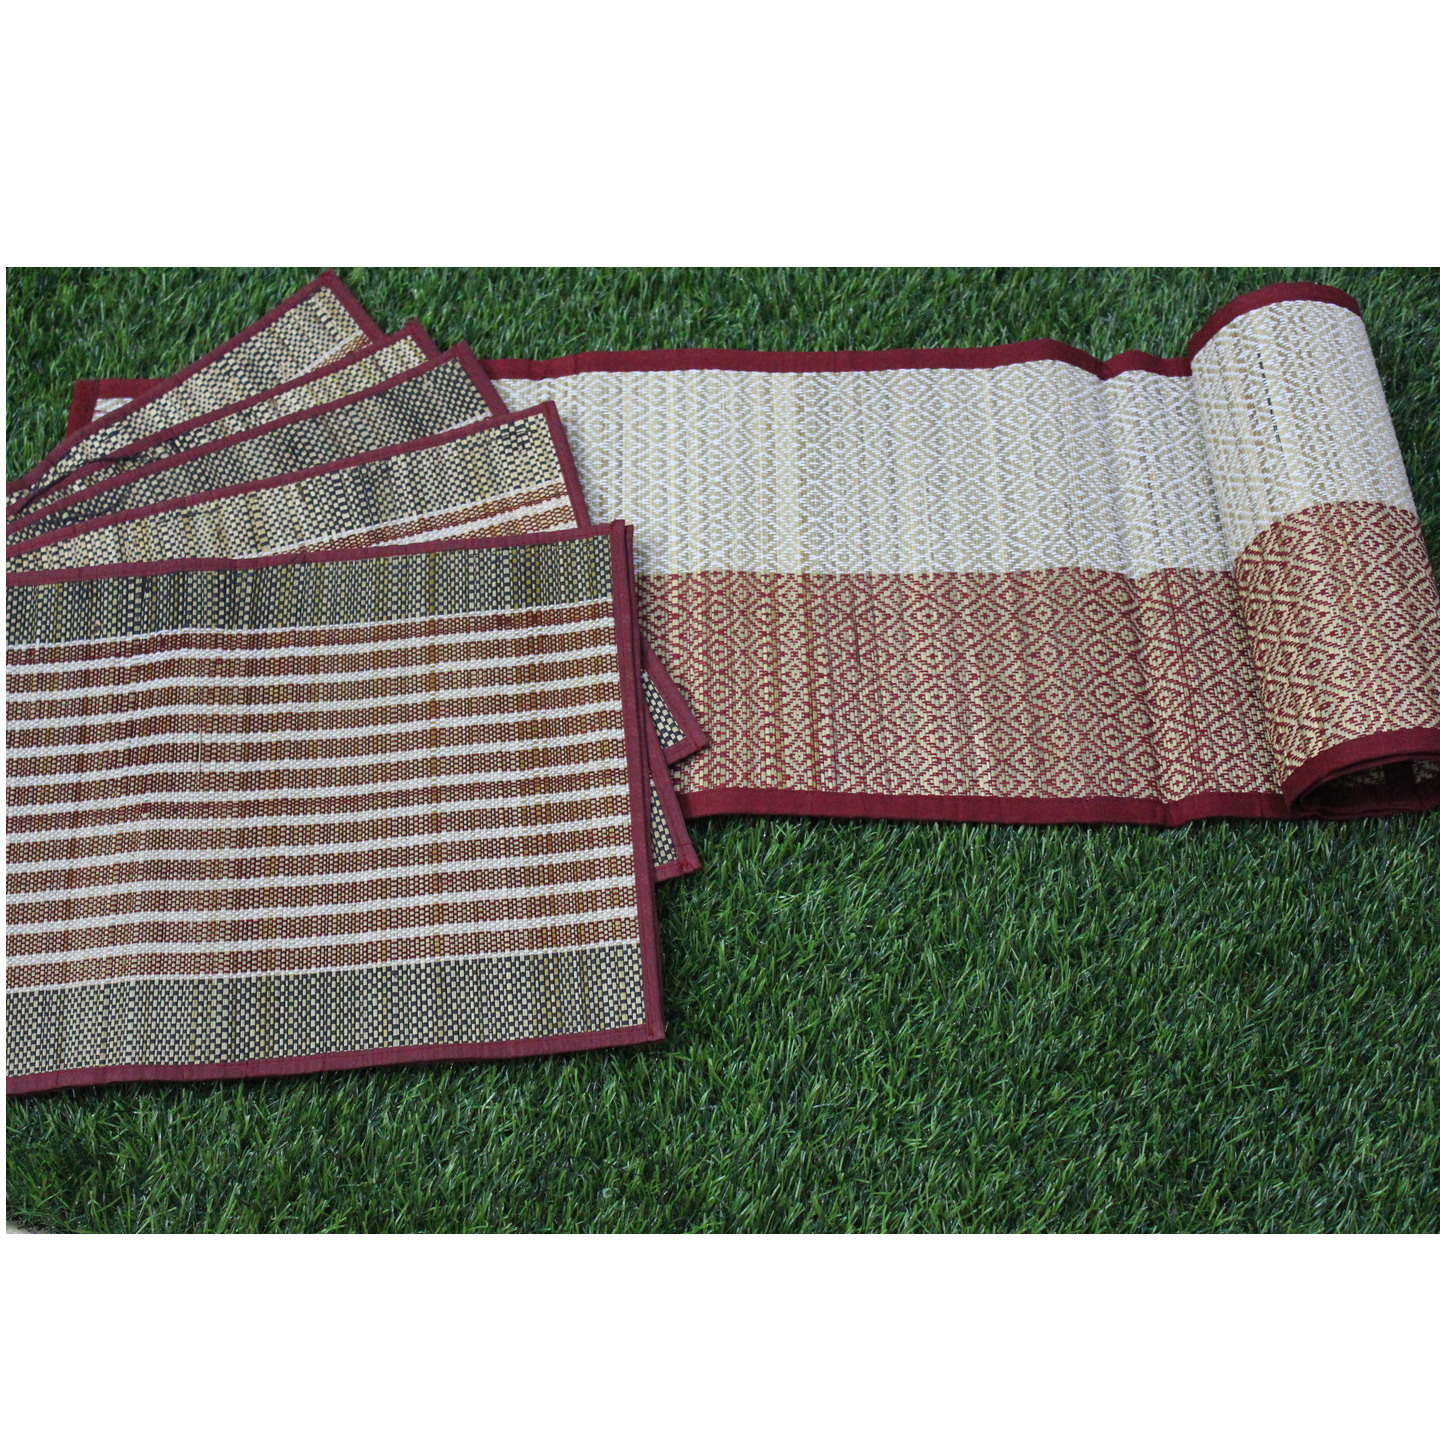 Red Handwoven Grass mats & runners (Set of 6)